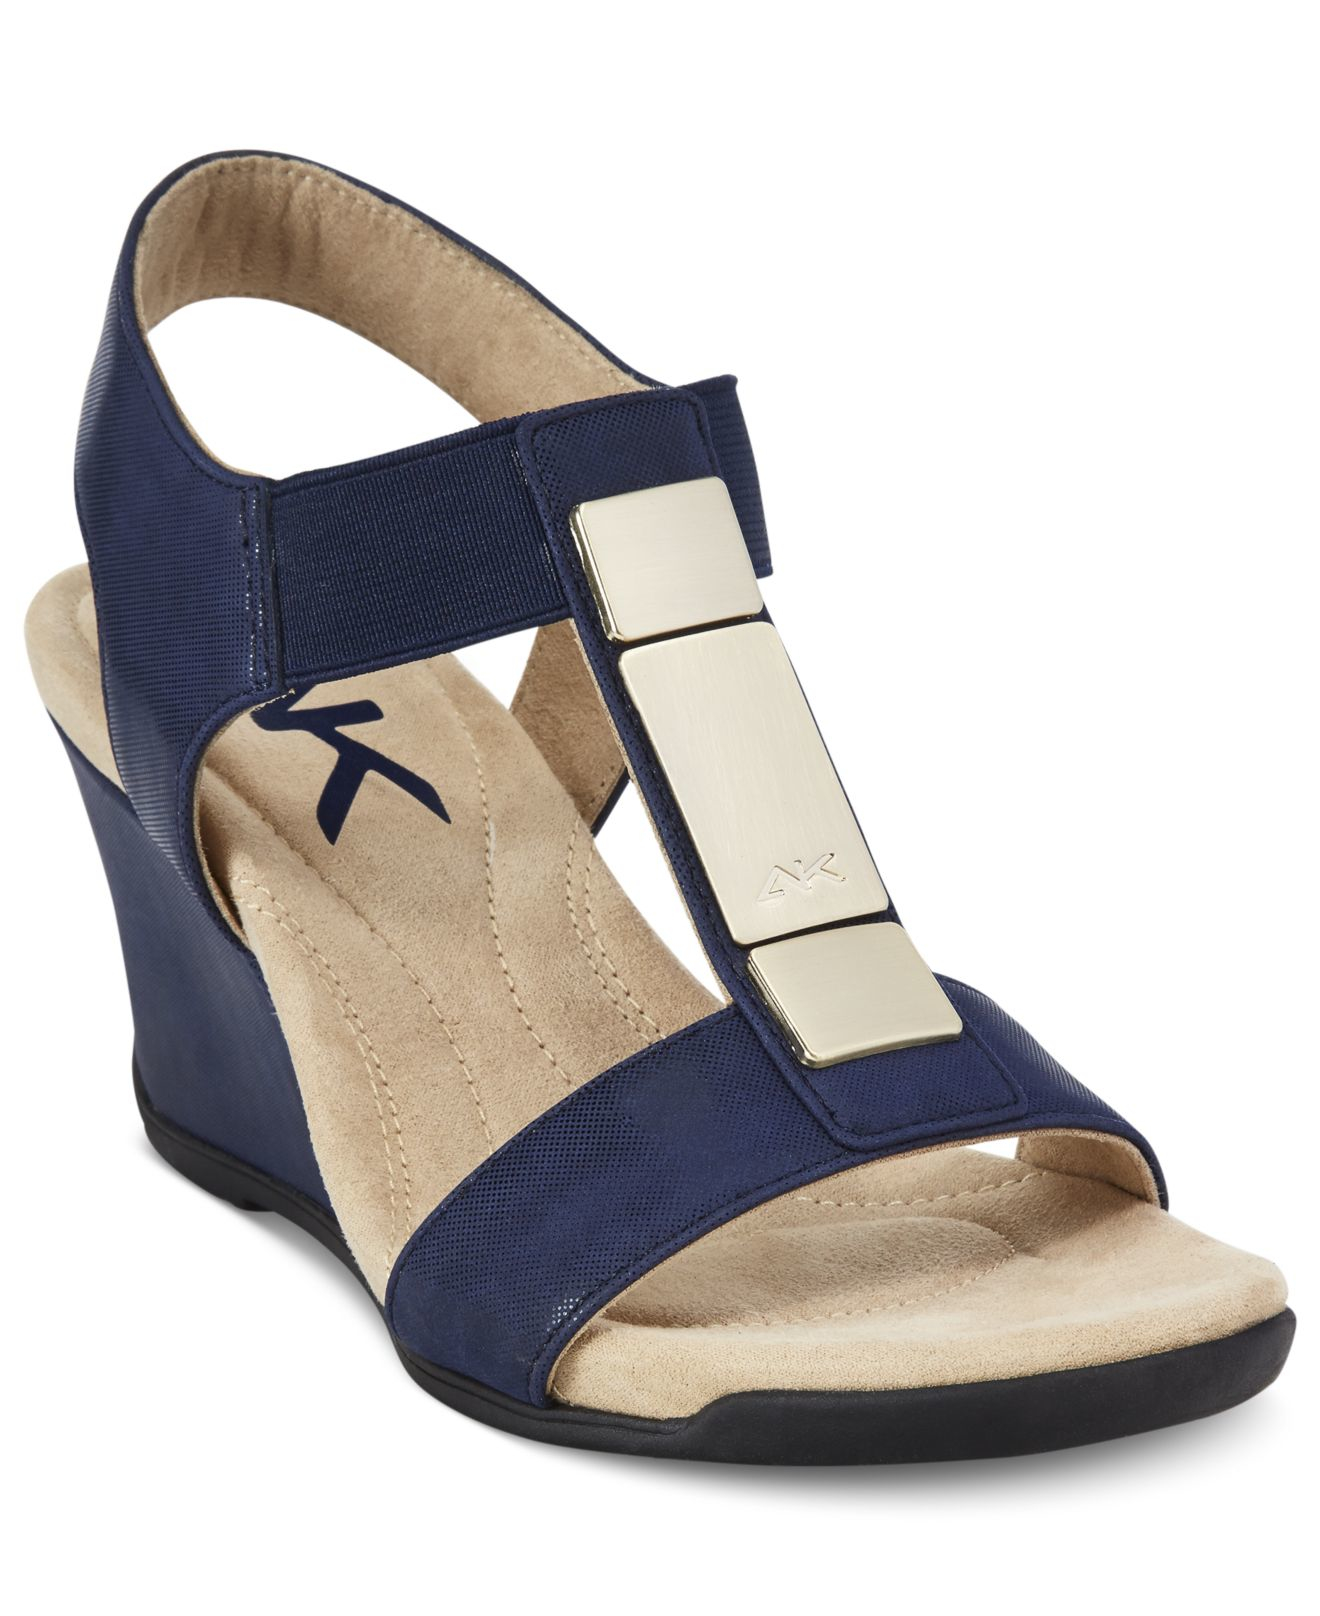 Anne Klein Loona Wedge Sandals in Blue - Lyst